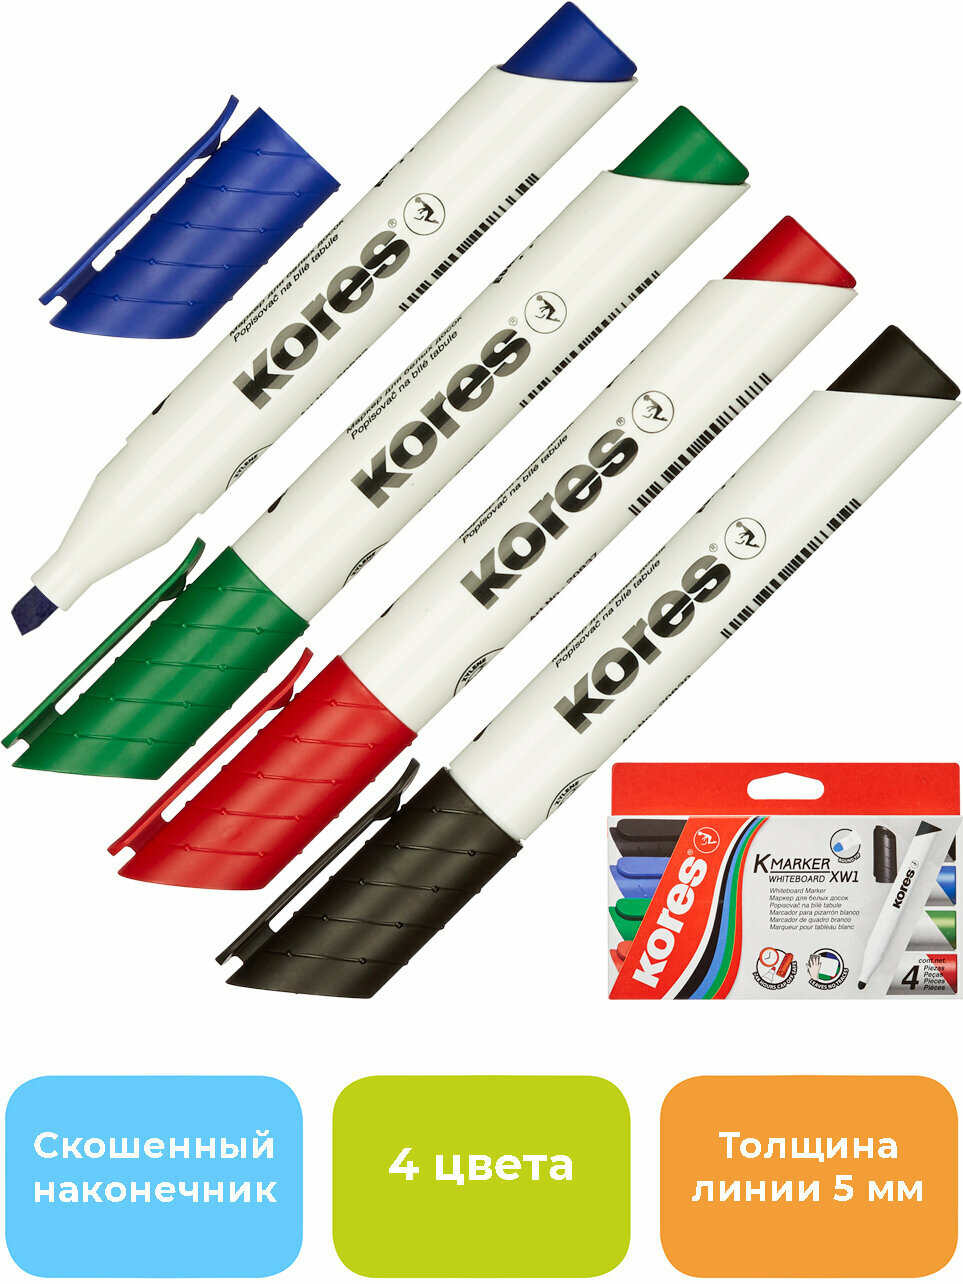 Маркеры набор для белых и магнитных досок Kores 20845 4 цвета, стираемые на водной основе, скошенный наконечник толщина линии от 3-5 мм стирается сухим способом, текстовыделители для школы, флипчарта